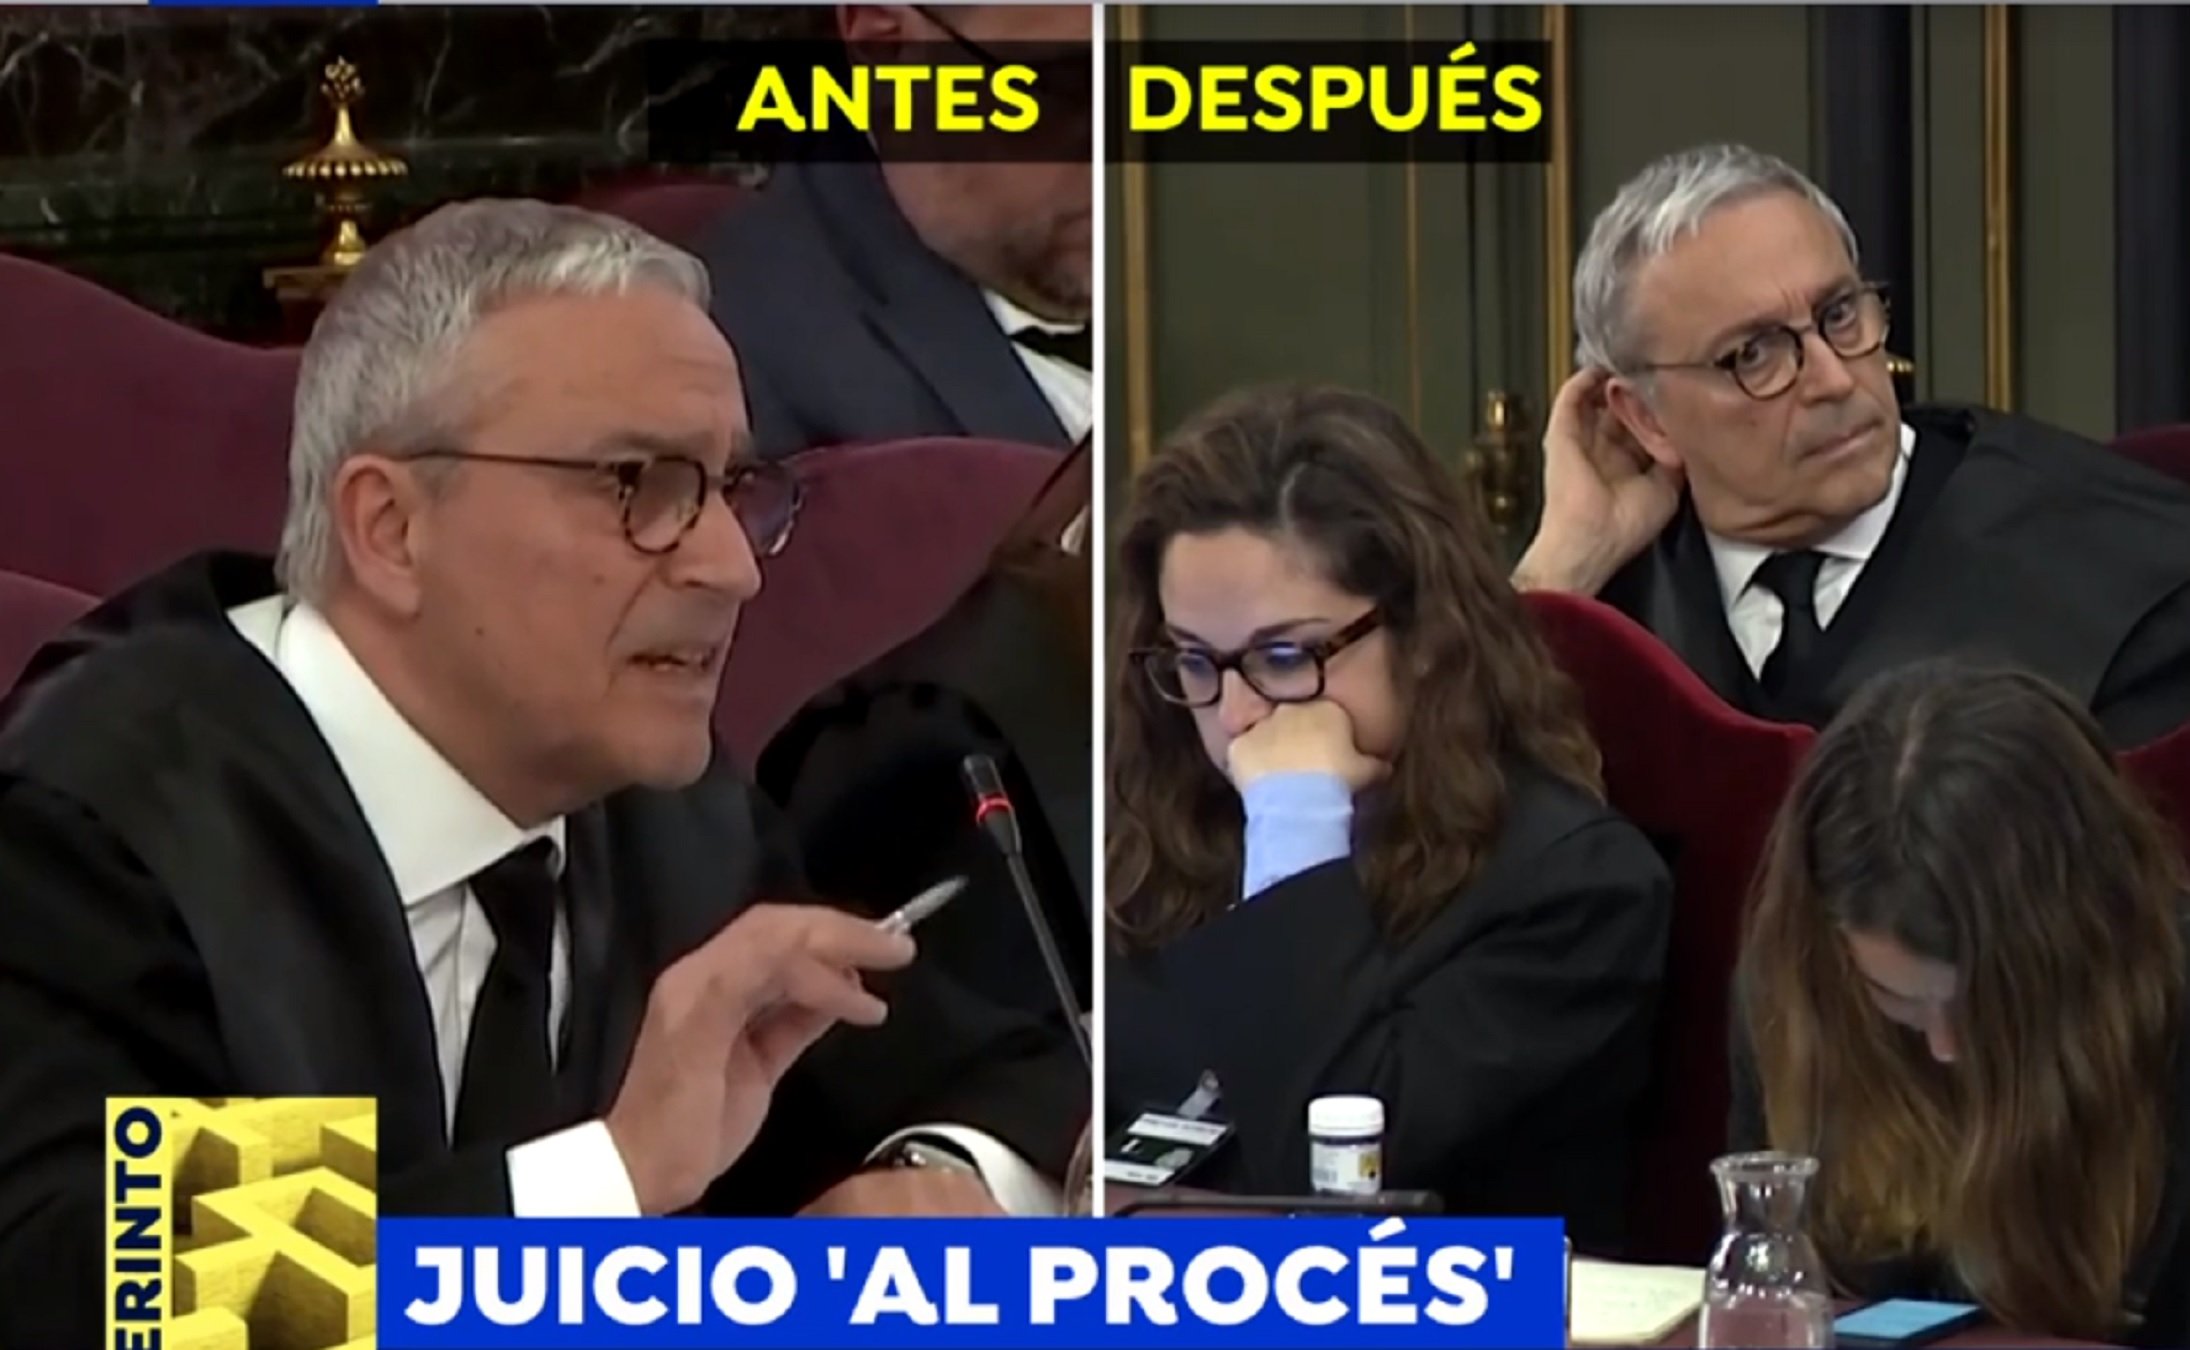 Per què Melero ha canviat de lloc al judici? La nova paranoia d'Antena 3